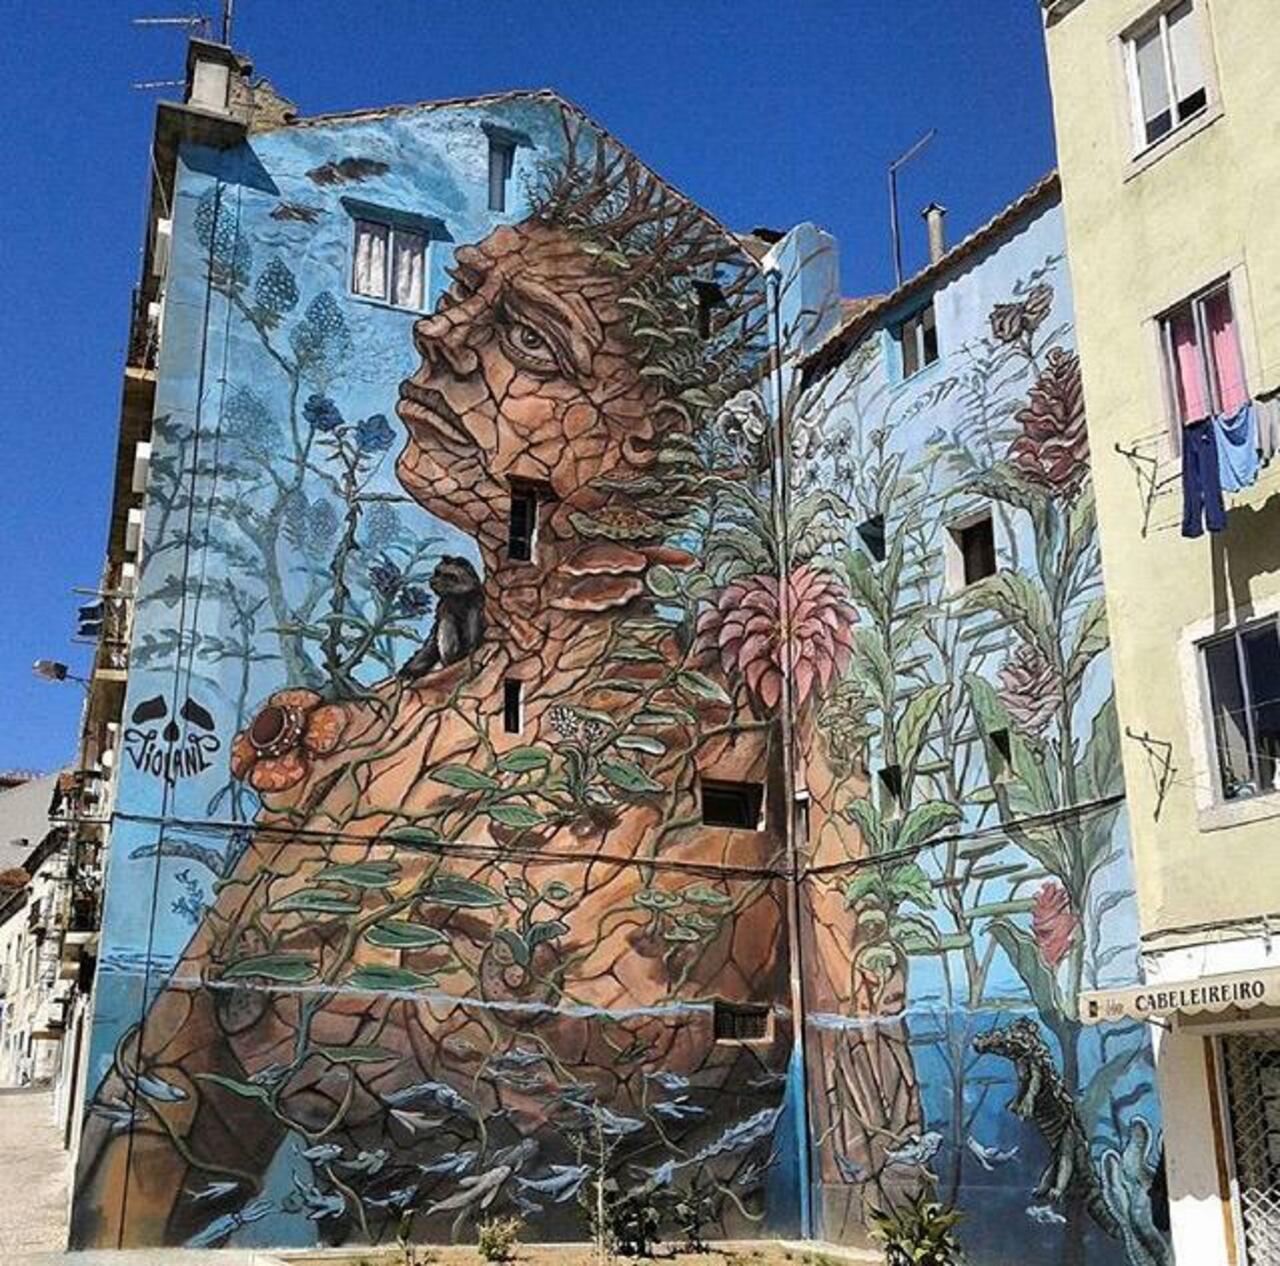 Street Art by Violant 

#art #graffiti #mural #streetart http://t.co/iIx0tXoary